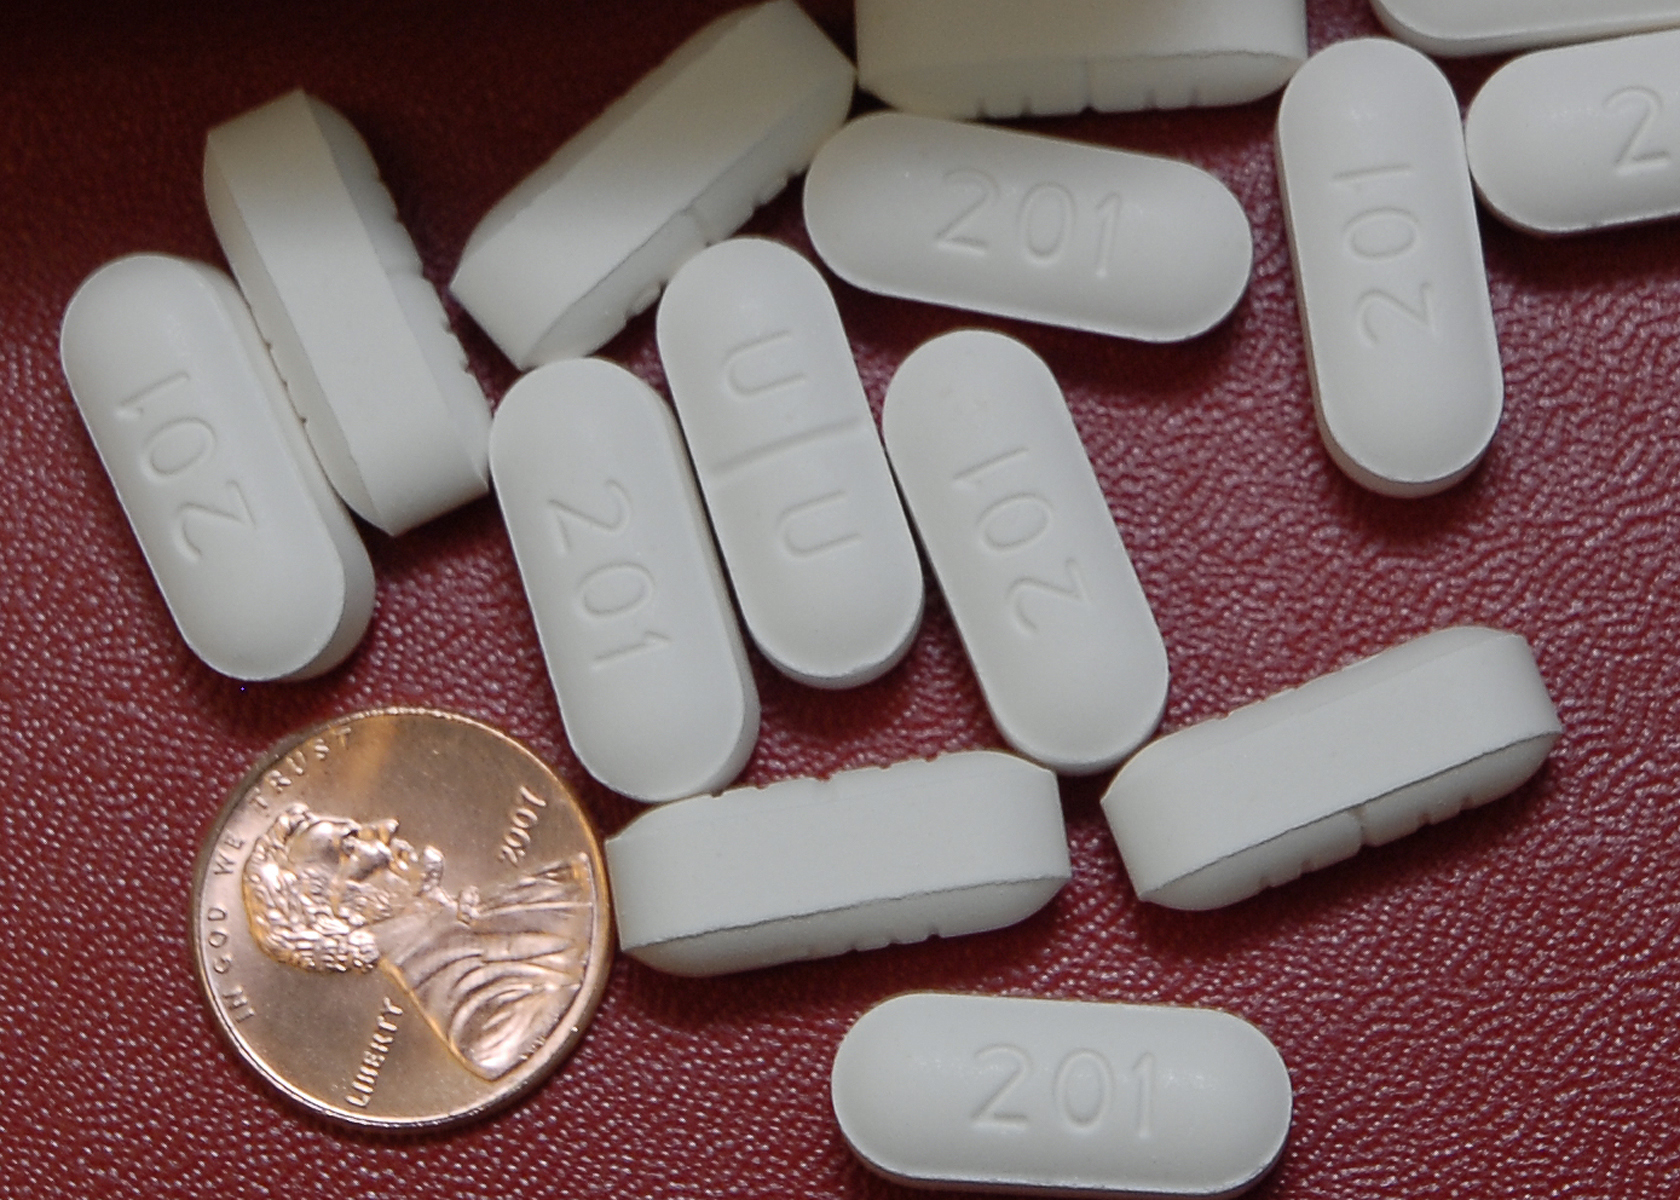 hydrocodone tablets